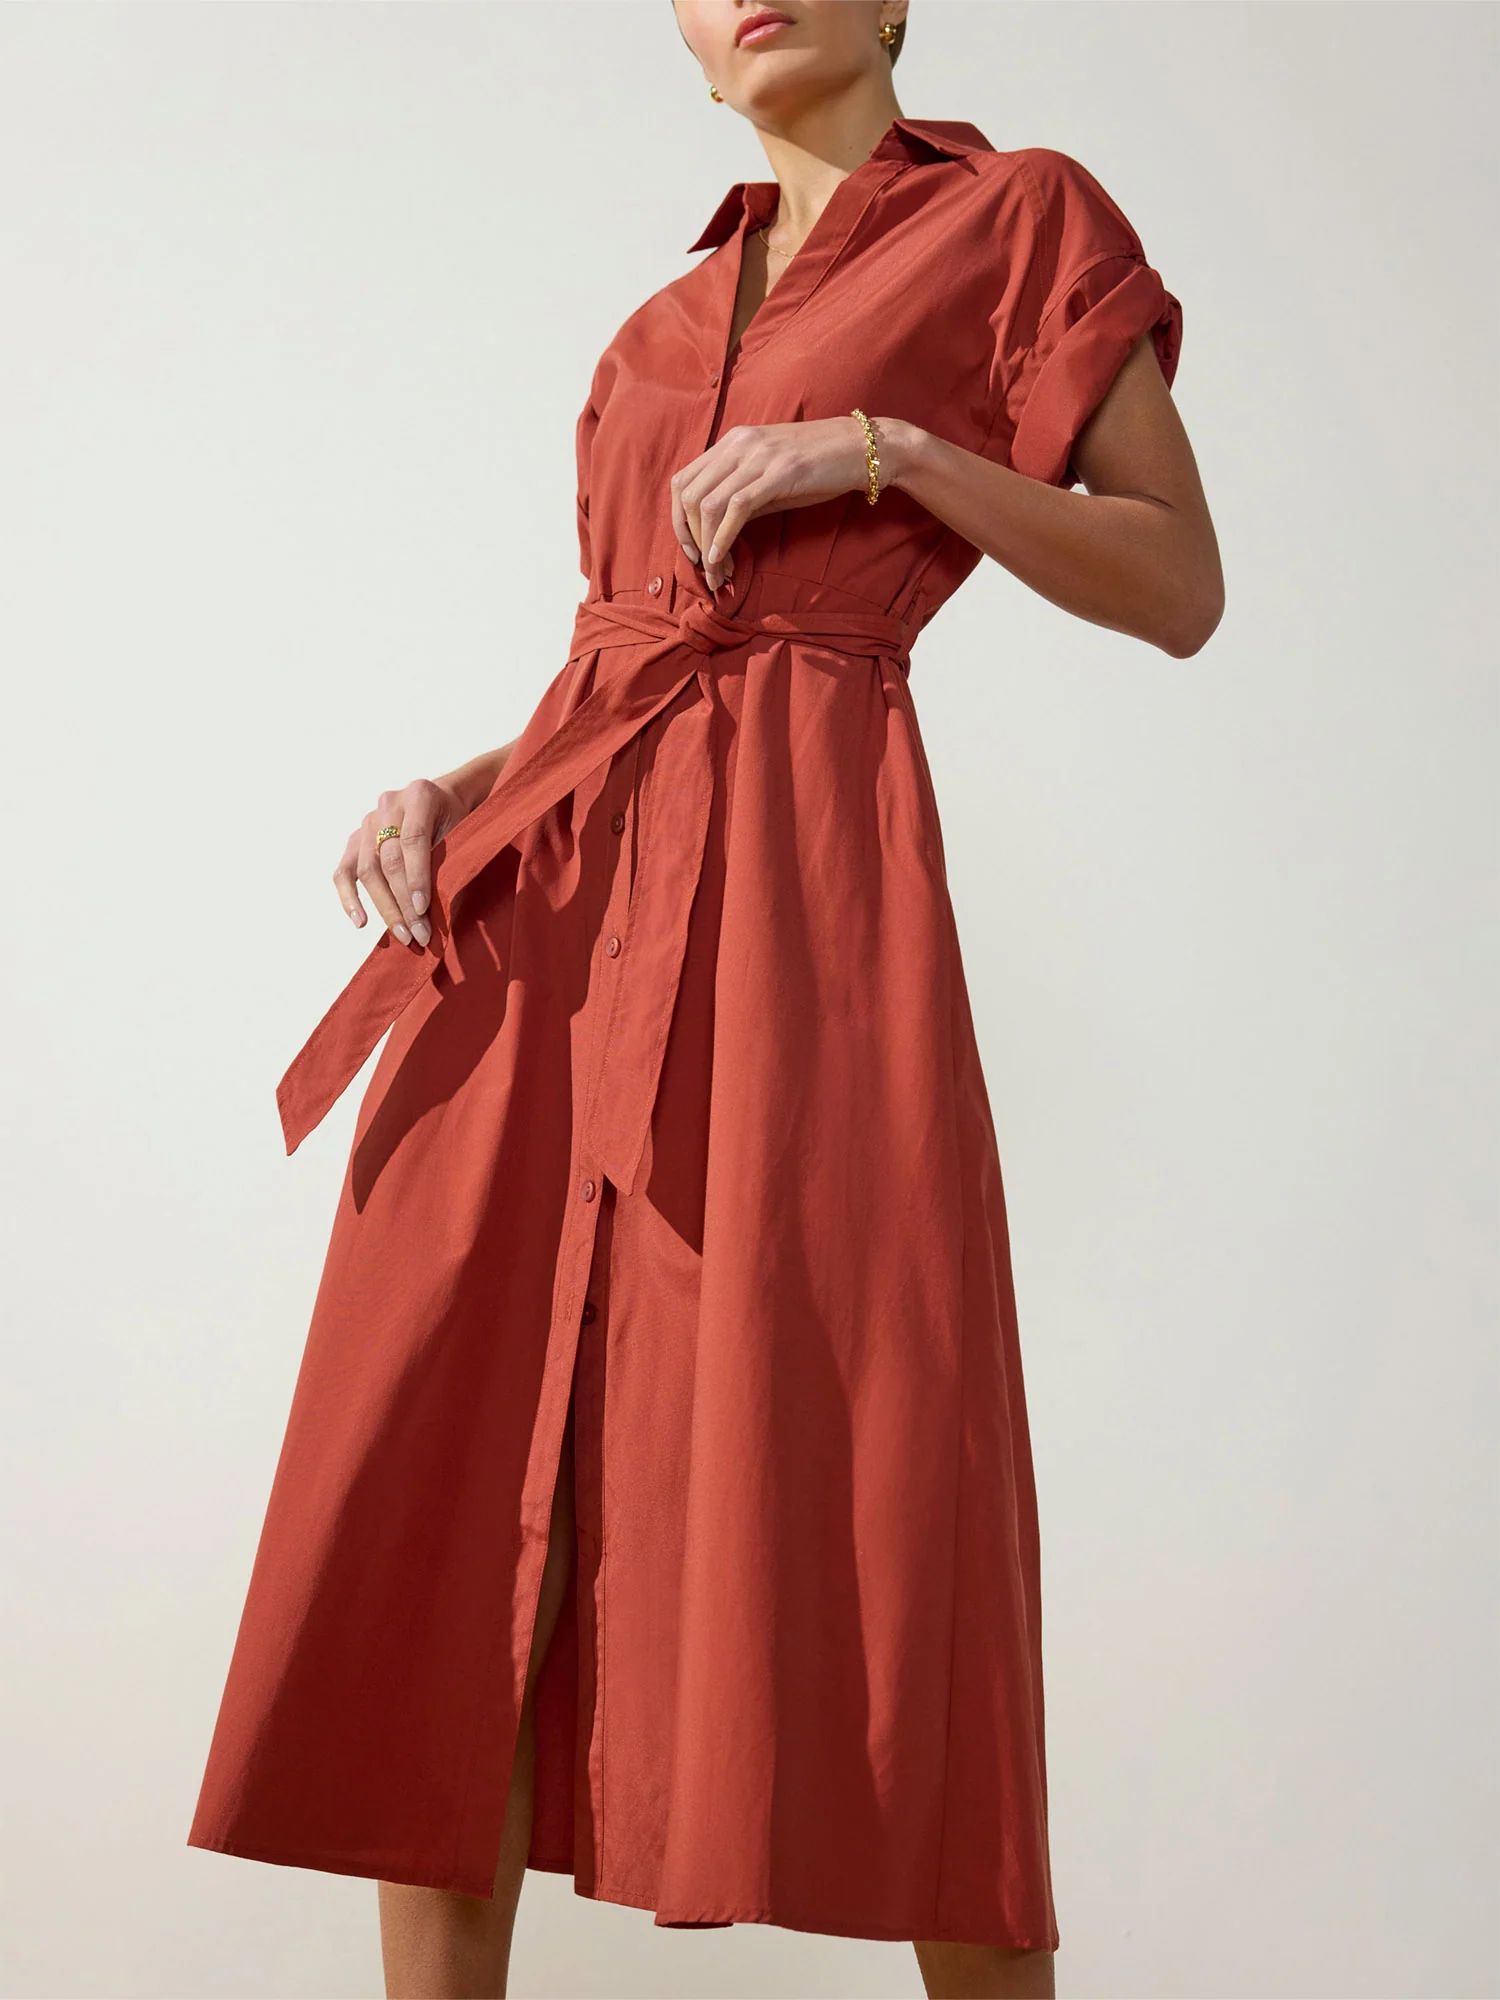 Brochu Walker | Women's Fia Belted Dress in Tuscany | Brochu Walker